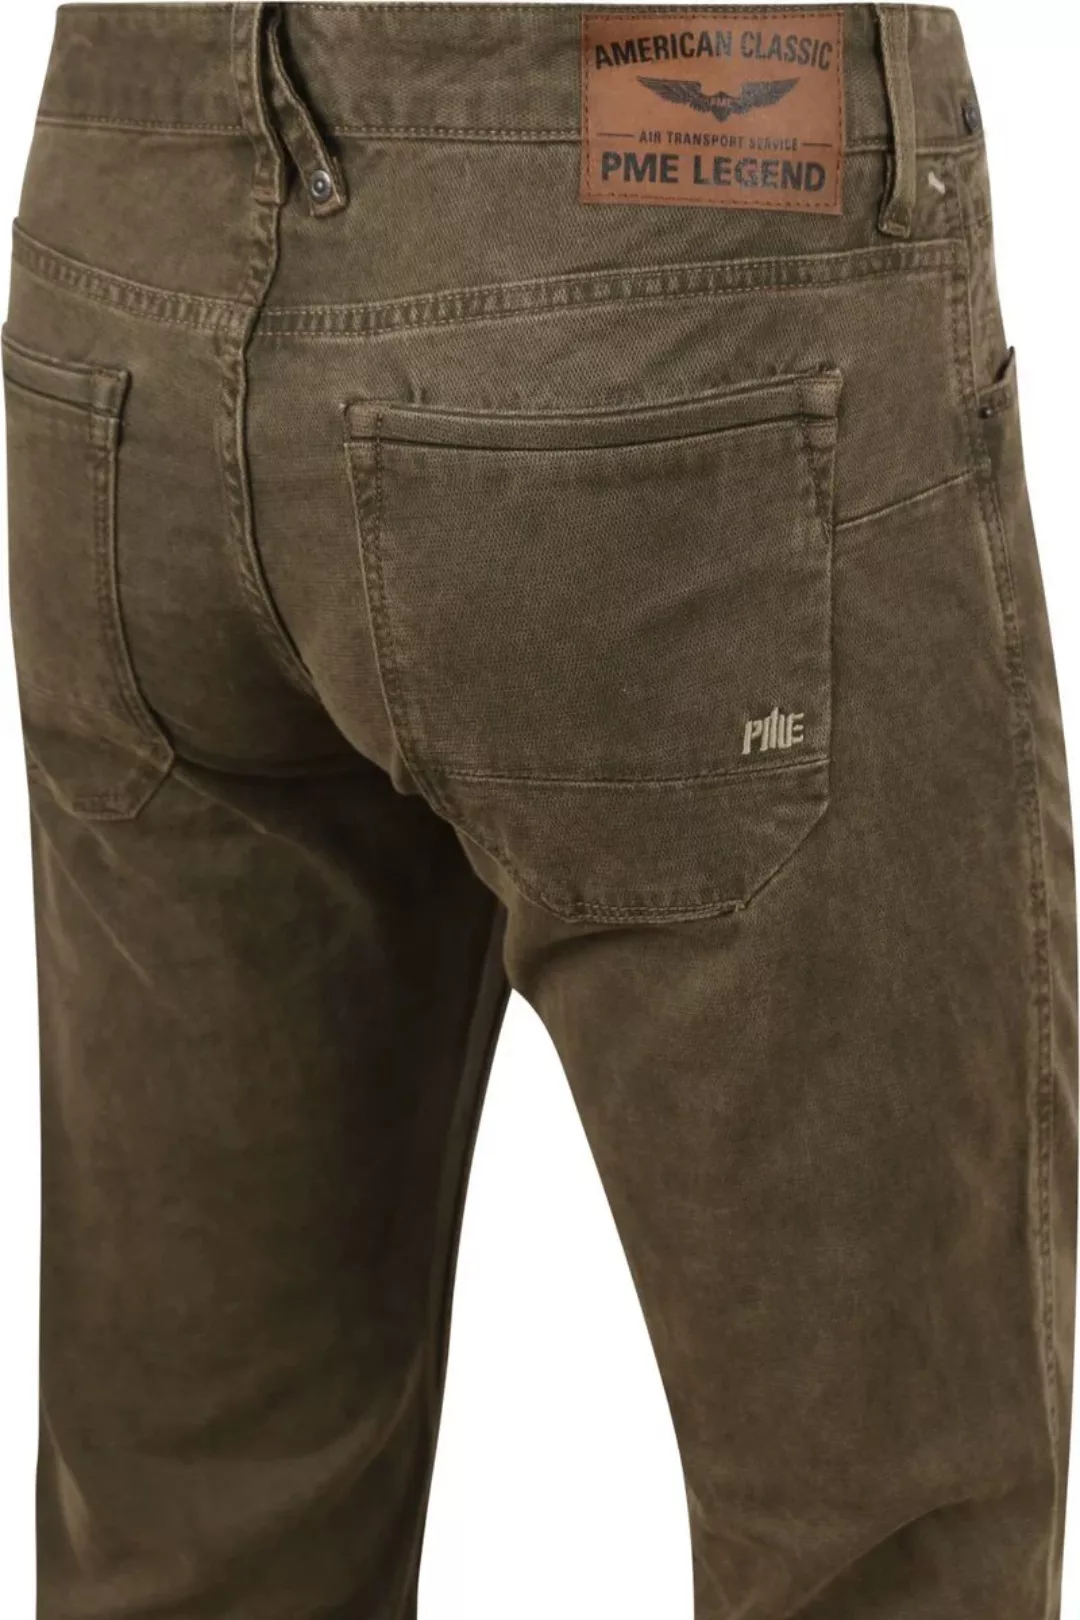 PME Legend Nightflight Jeans Olivgrün - Größe W 31 - L 32 günstig online kaufen